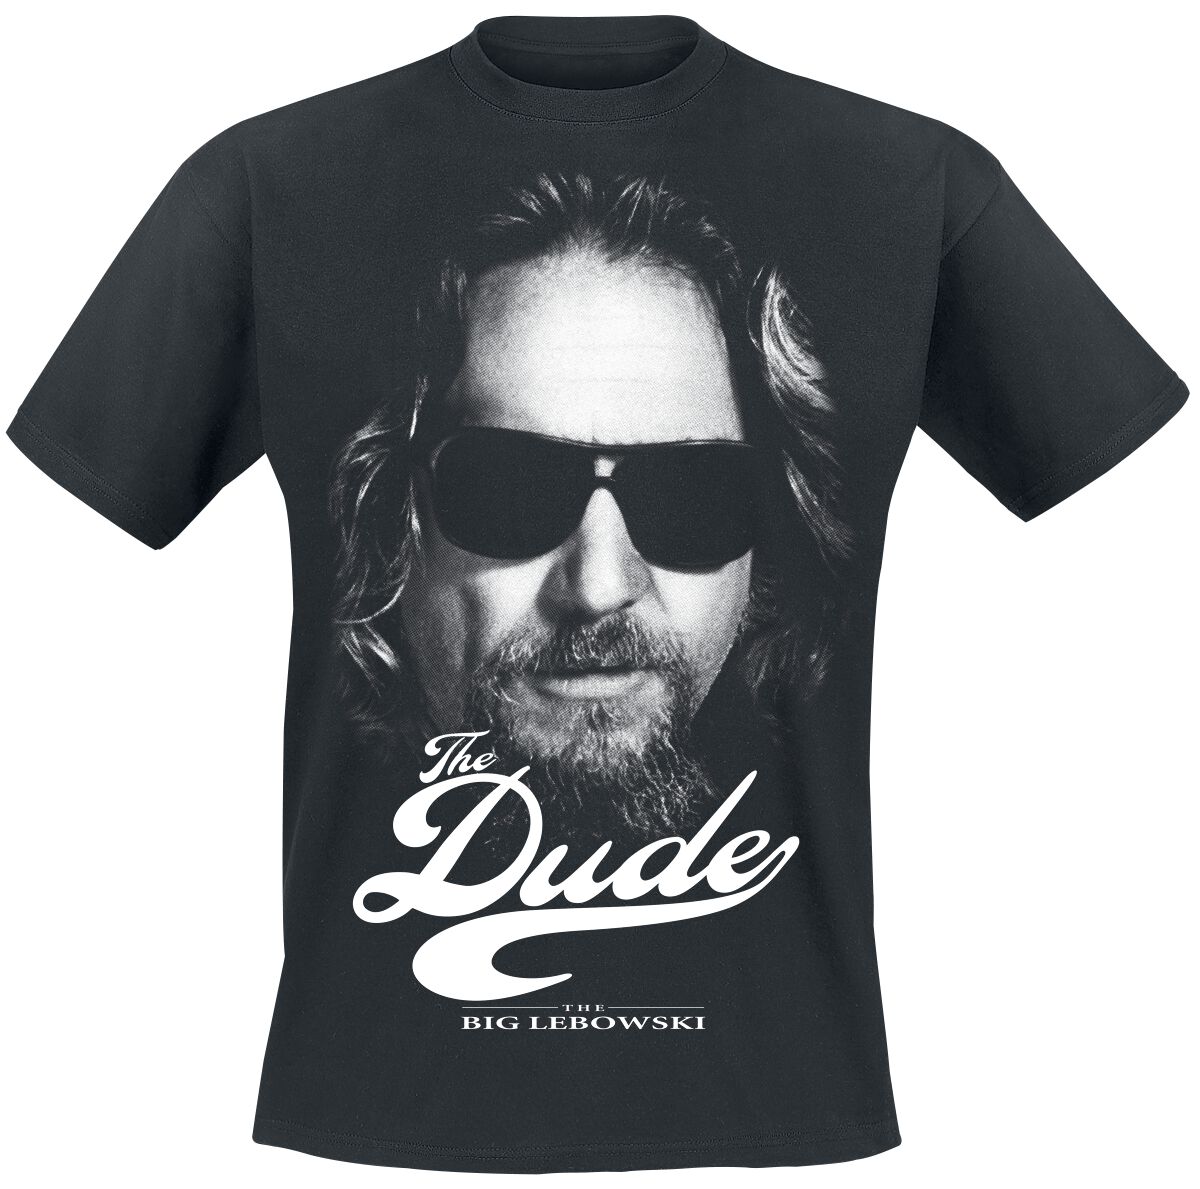 The Big Lebowski T-Shirt - The Dude - S bis L - für Männer - Größe S - schwarz  - Lizenzierter Fanartikel